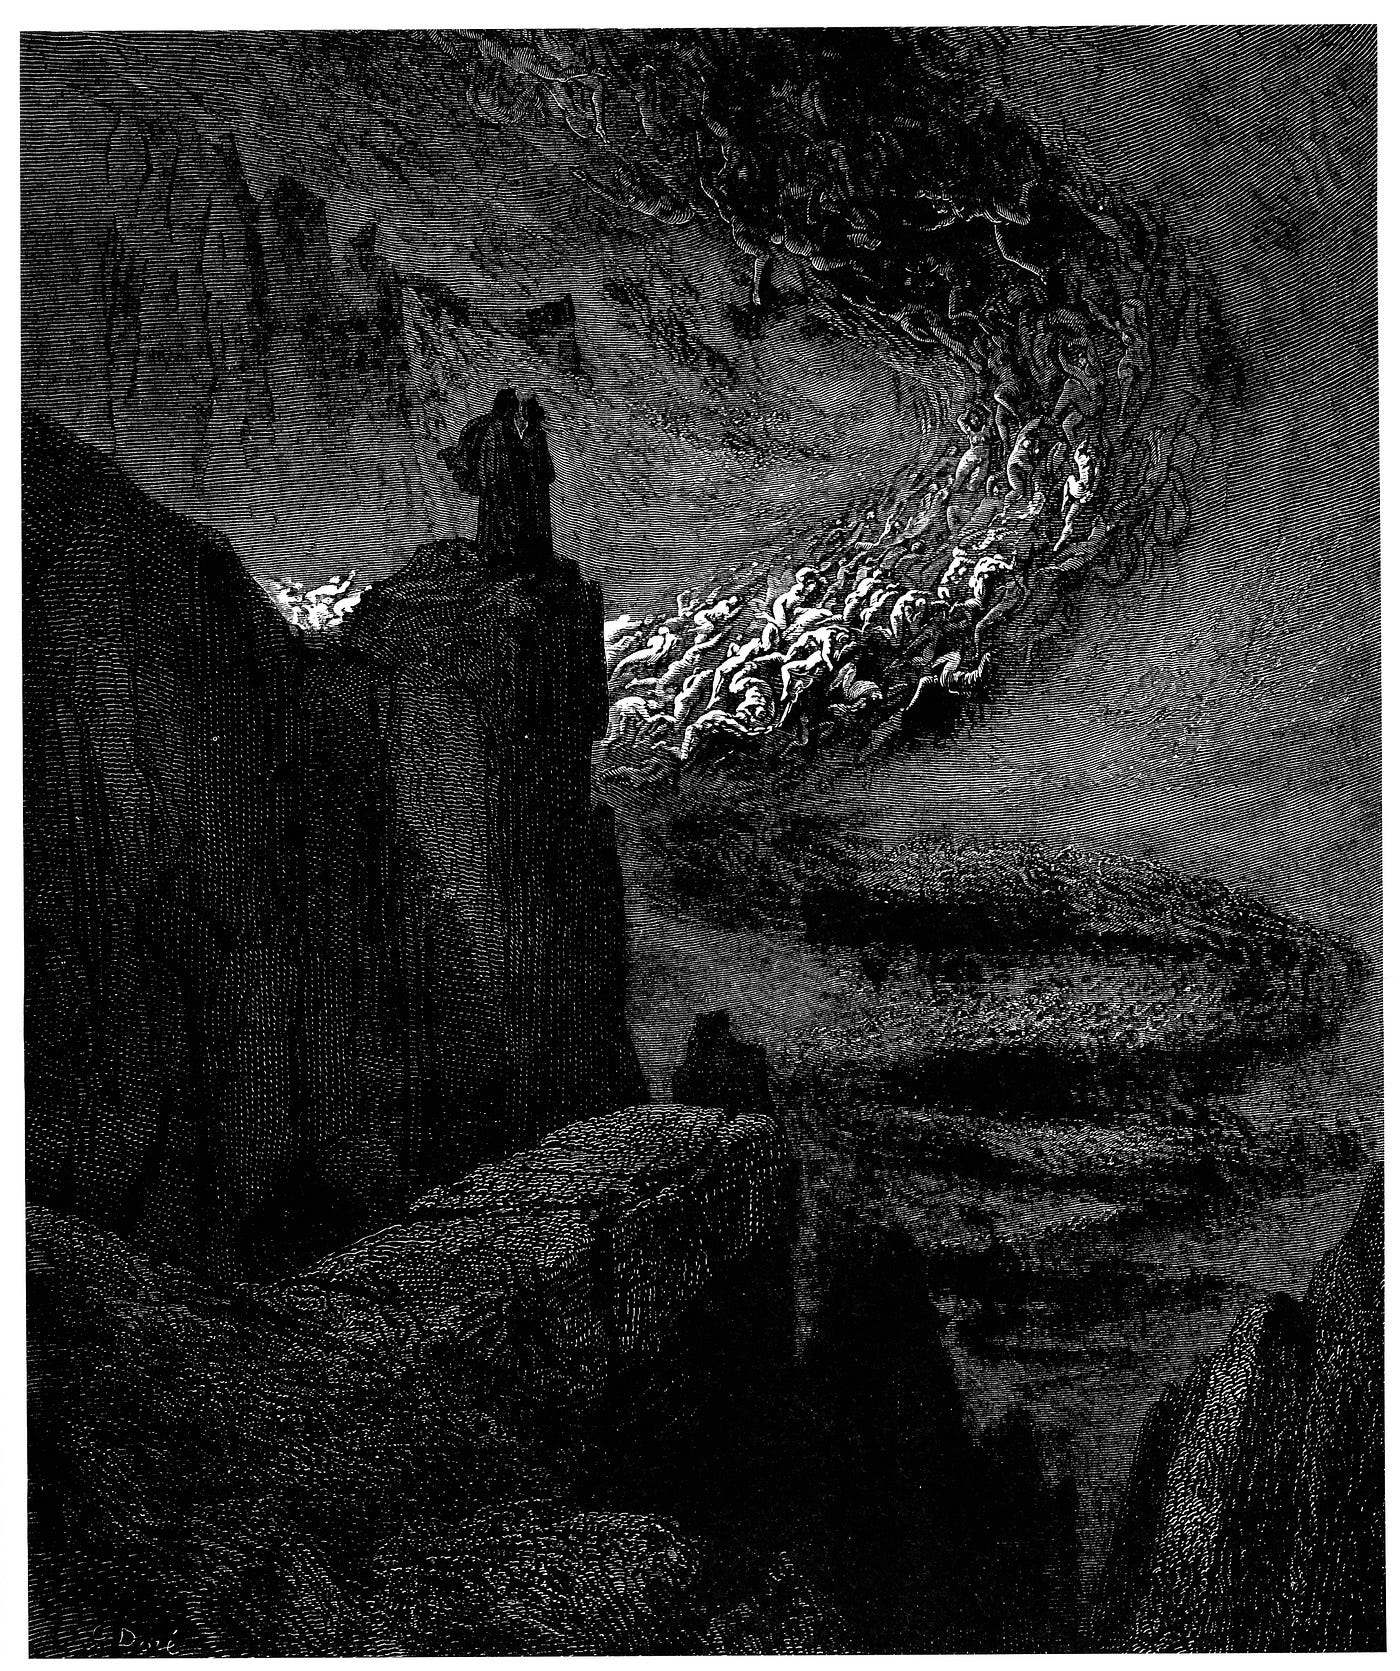 Dante's Inferno: Canto V